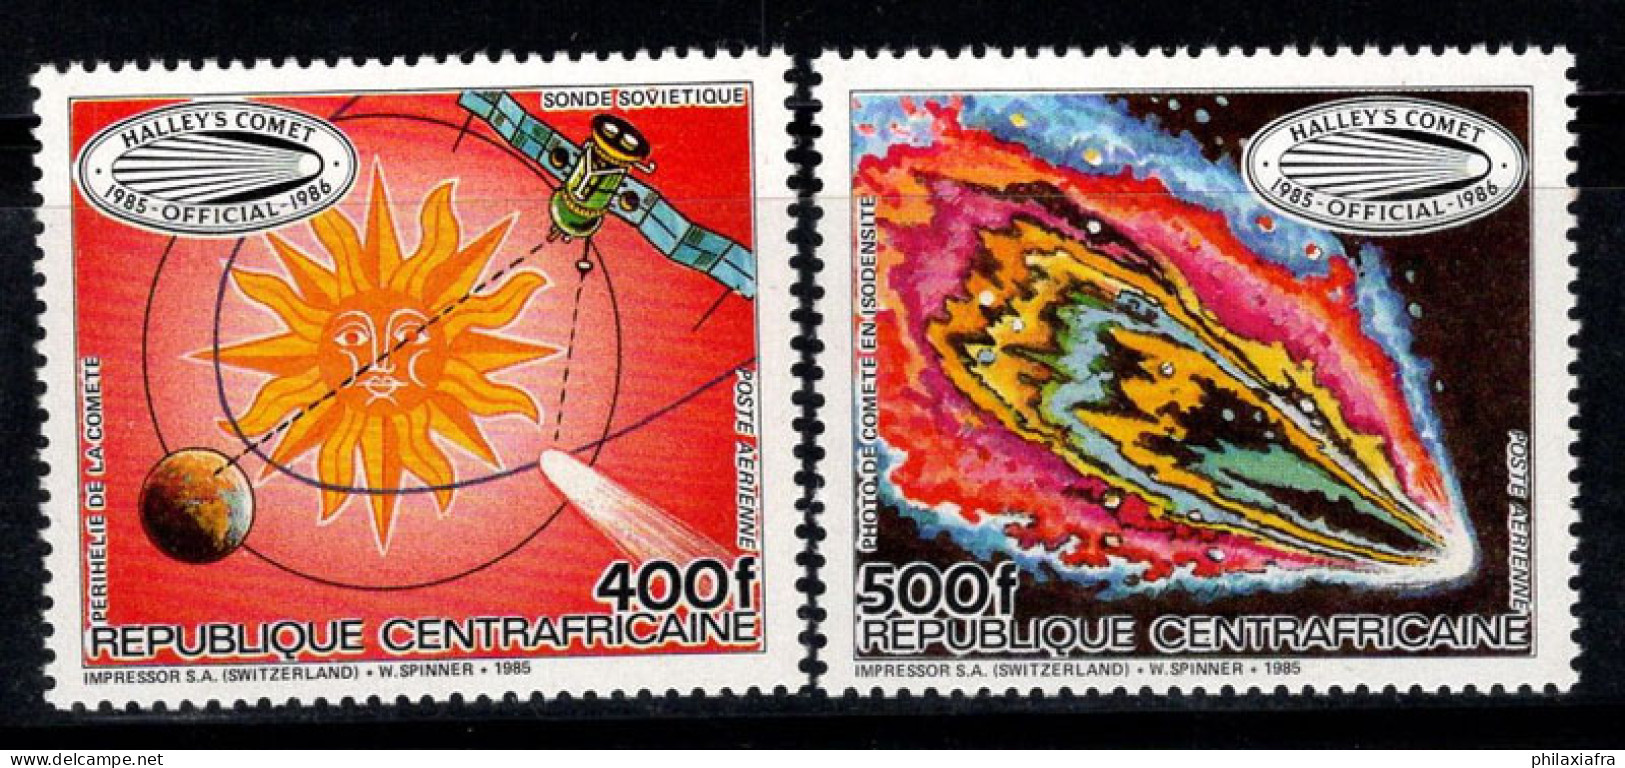 République Centrafricaine 1985 Mi. 1191-1192 Neuf ** 100% Poste Aérienne Comète De Halley - Repubblica Centroafricana